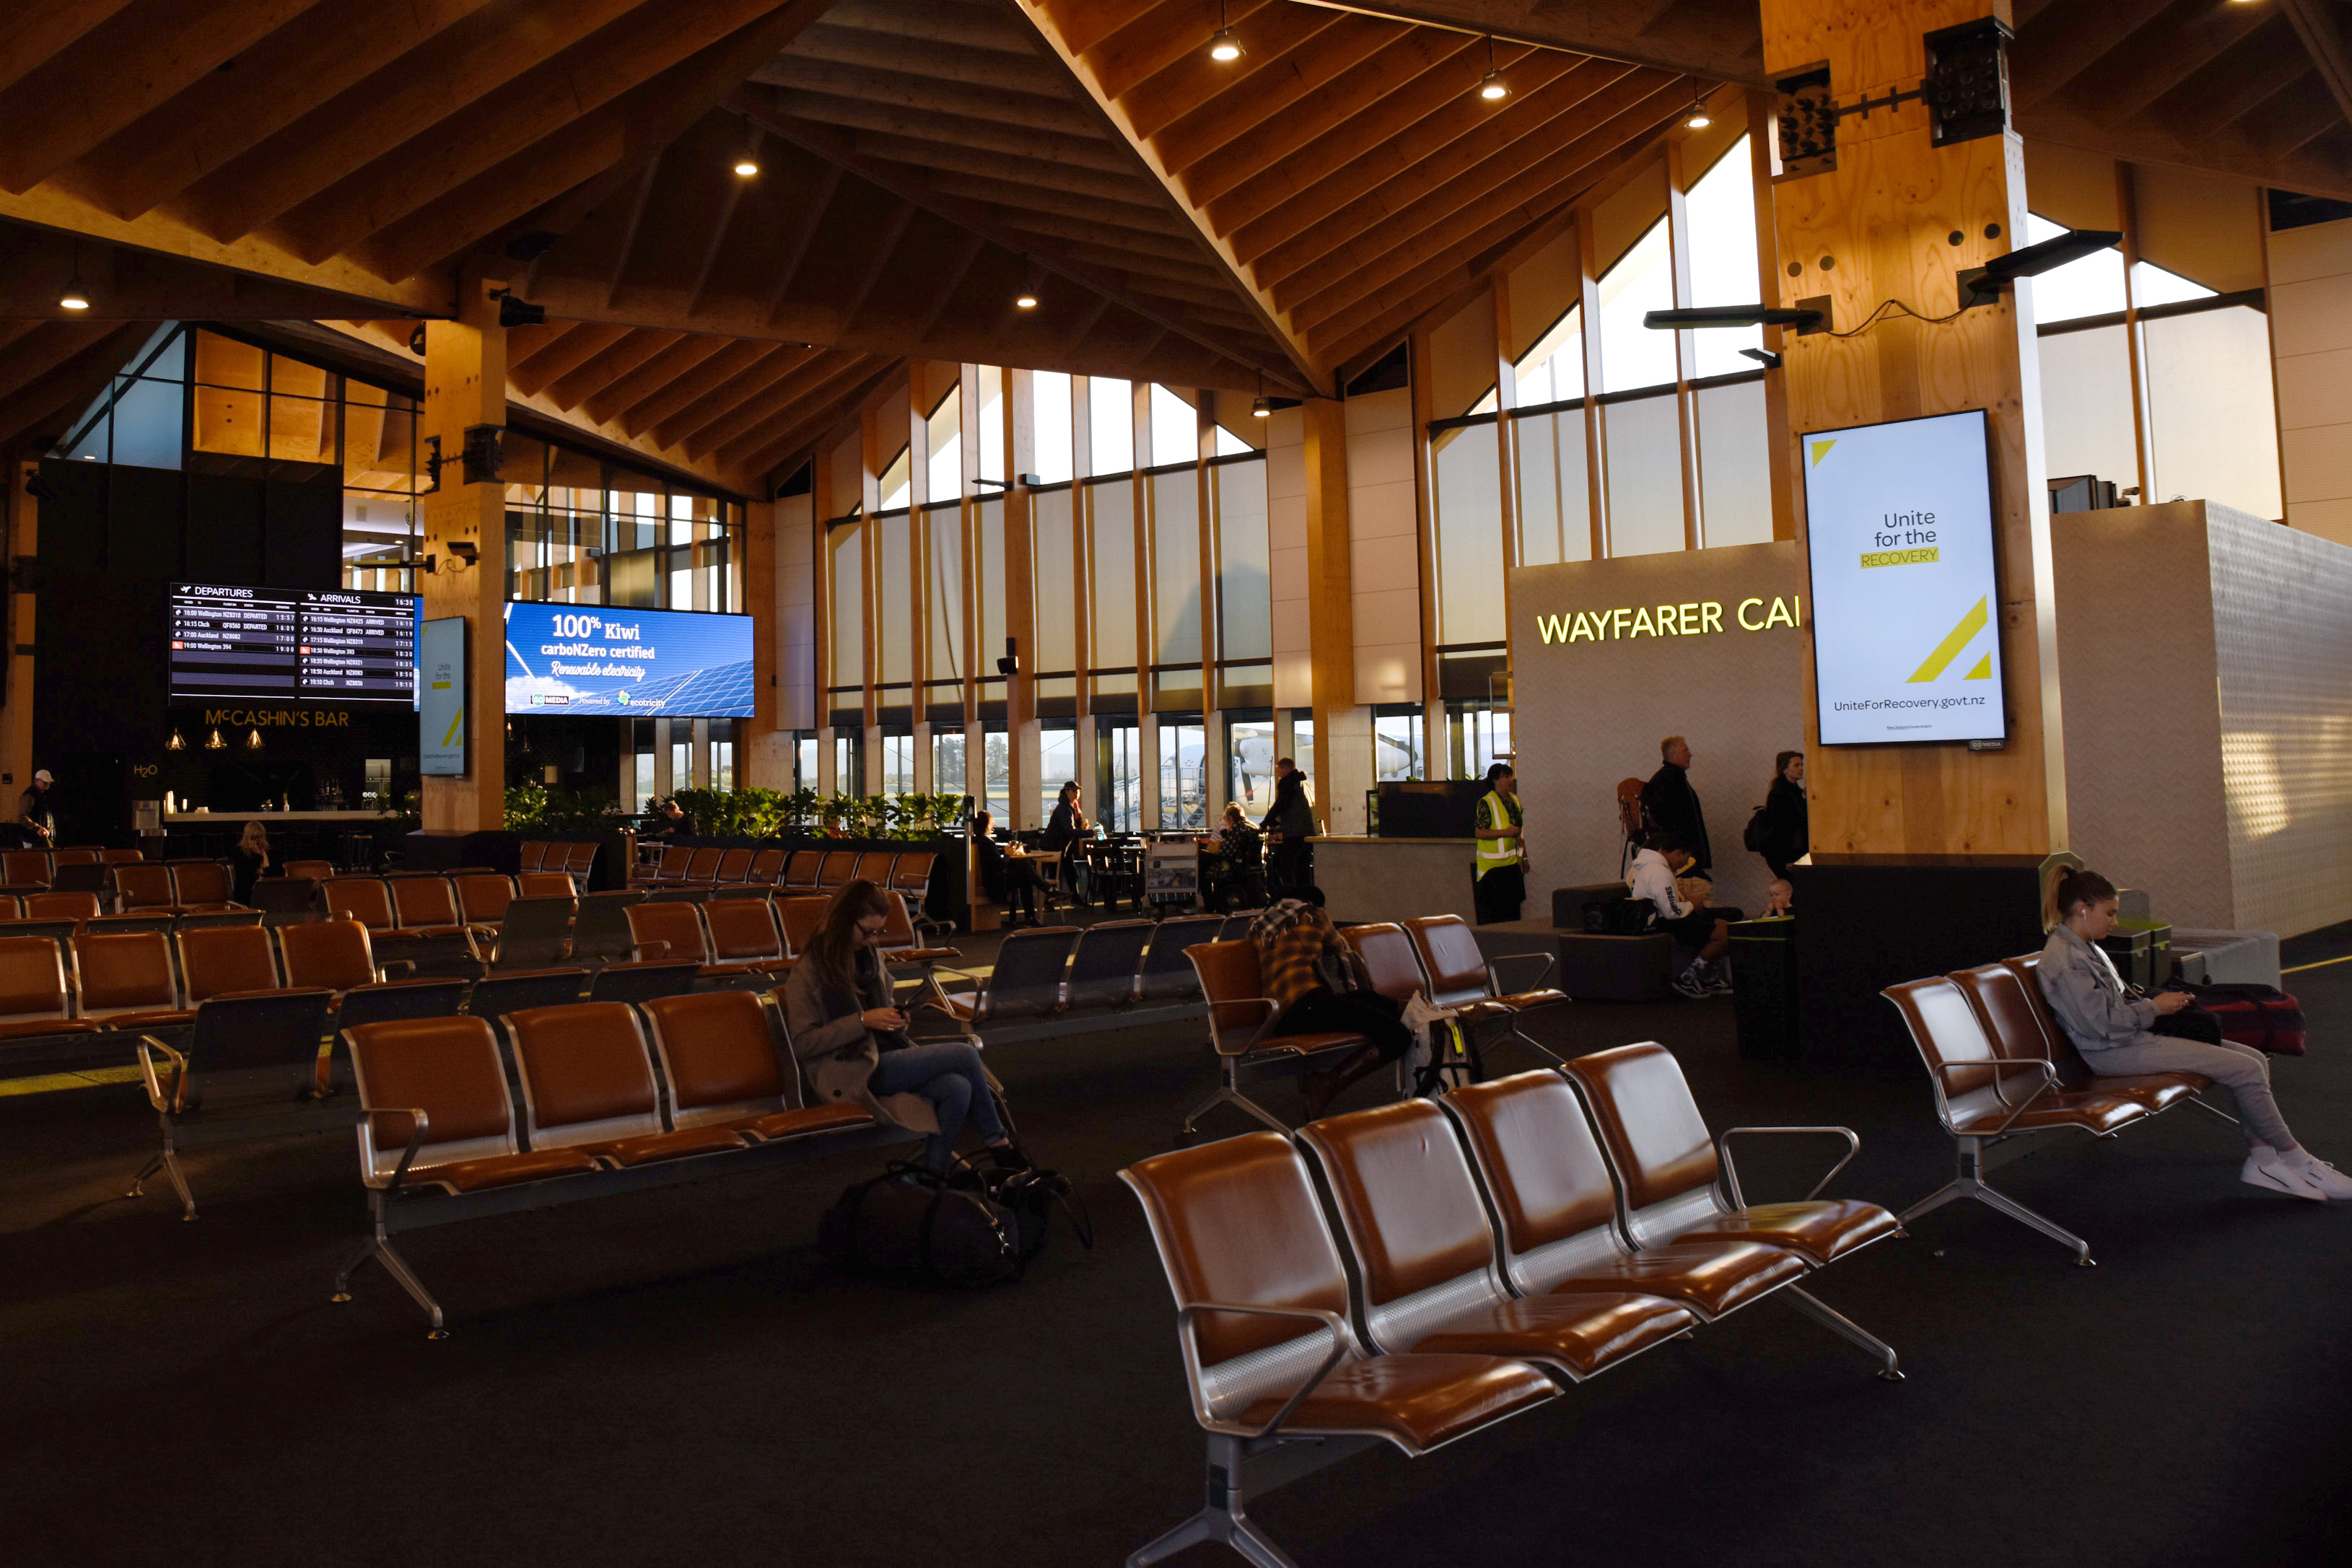 El interior del aeropuerto de Nelson en el primer día después del levantamiento de las restricciones domésticas impuestas en Nueva Zelanda por el coronavirus, el 9 de junio de 2020 (REUTERS/Tatsiana Chypsanava)